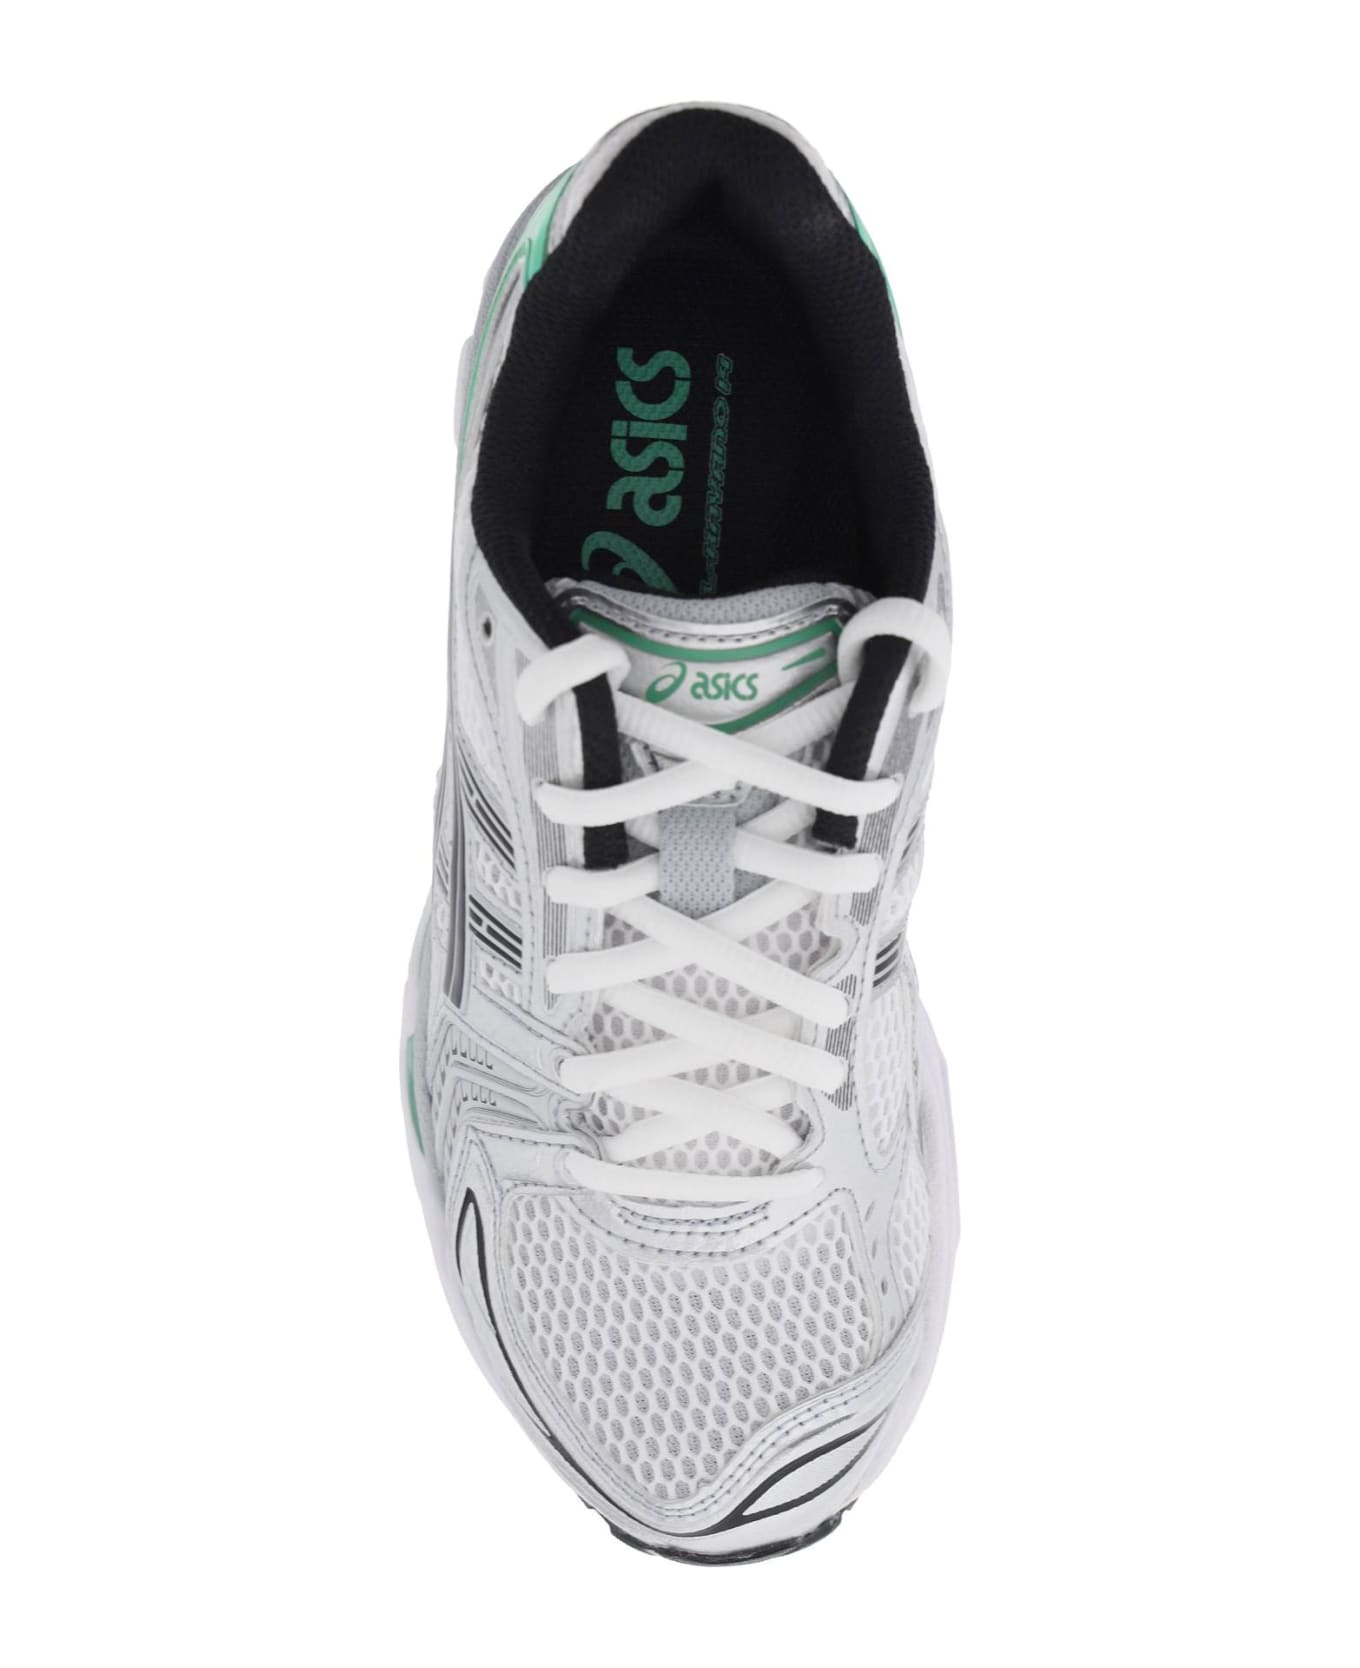 Asics Gel-kayano 14 Sneakers - White